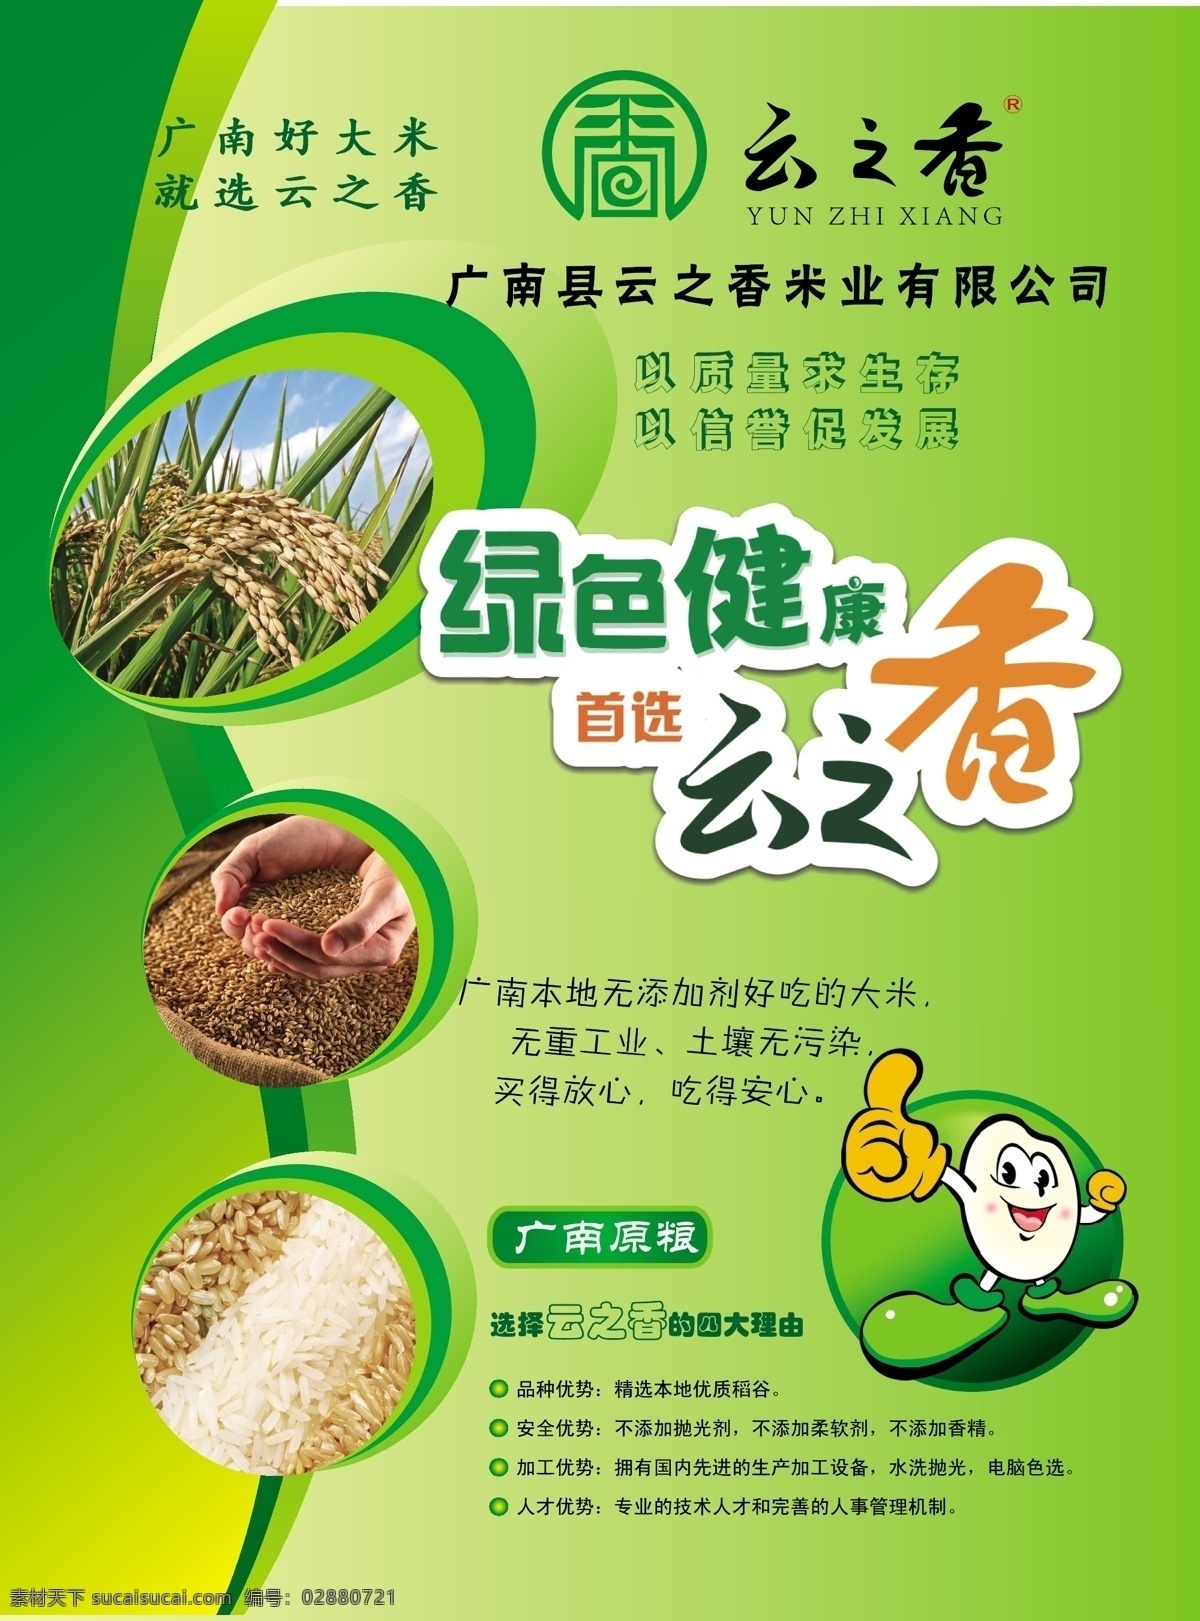 dm dm宣传单 大米 谷子 绿色 绿色健康 水稻 宣传单 米业 页 矢量 模板下载 米业宣传单页 矢量图 日常生活